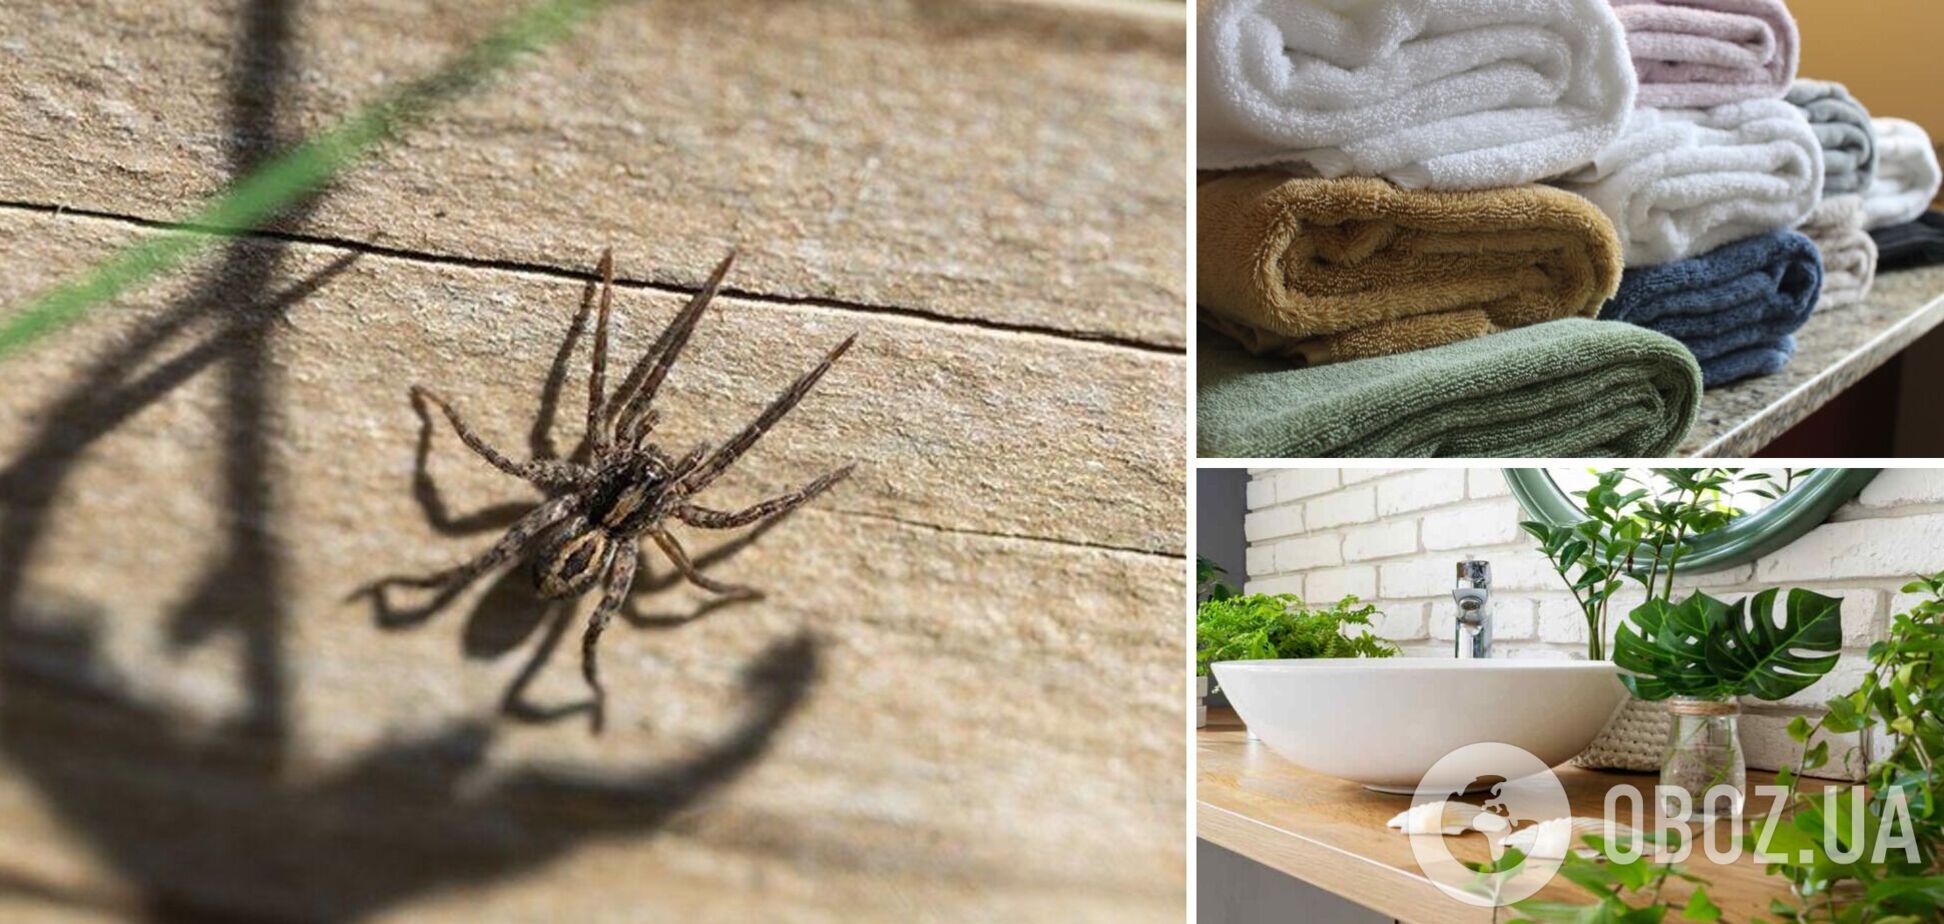 Названы любимые места пауков в вашем доме: как избавиться от нежелательных 'соседей'